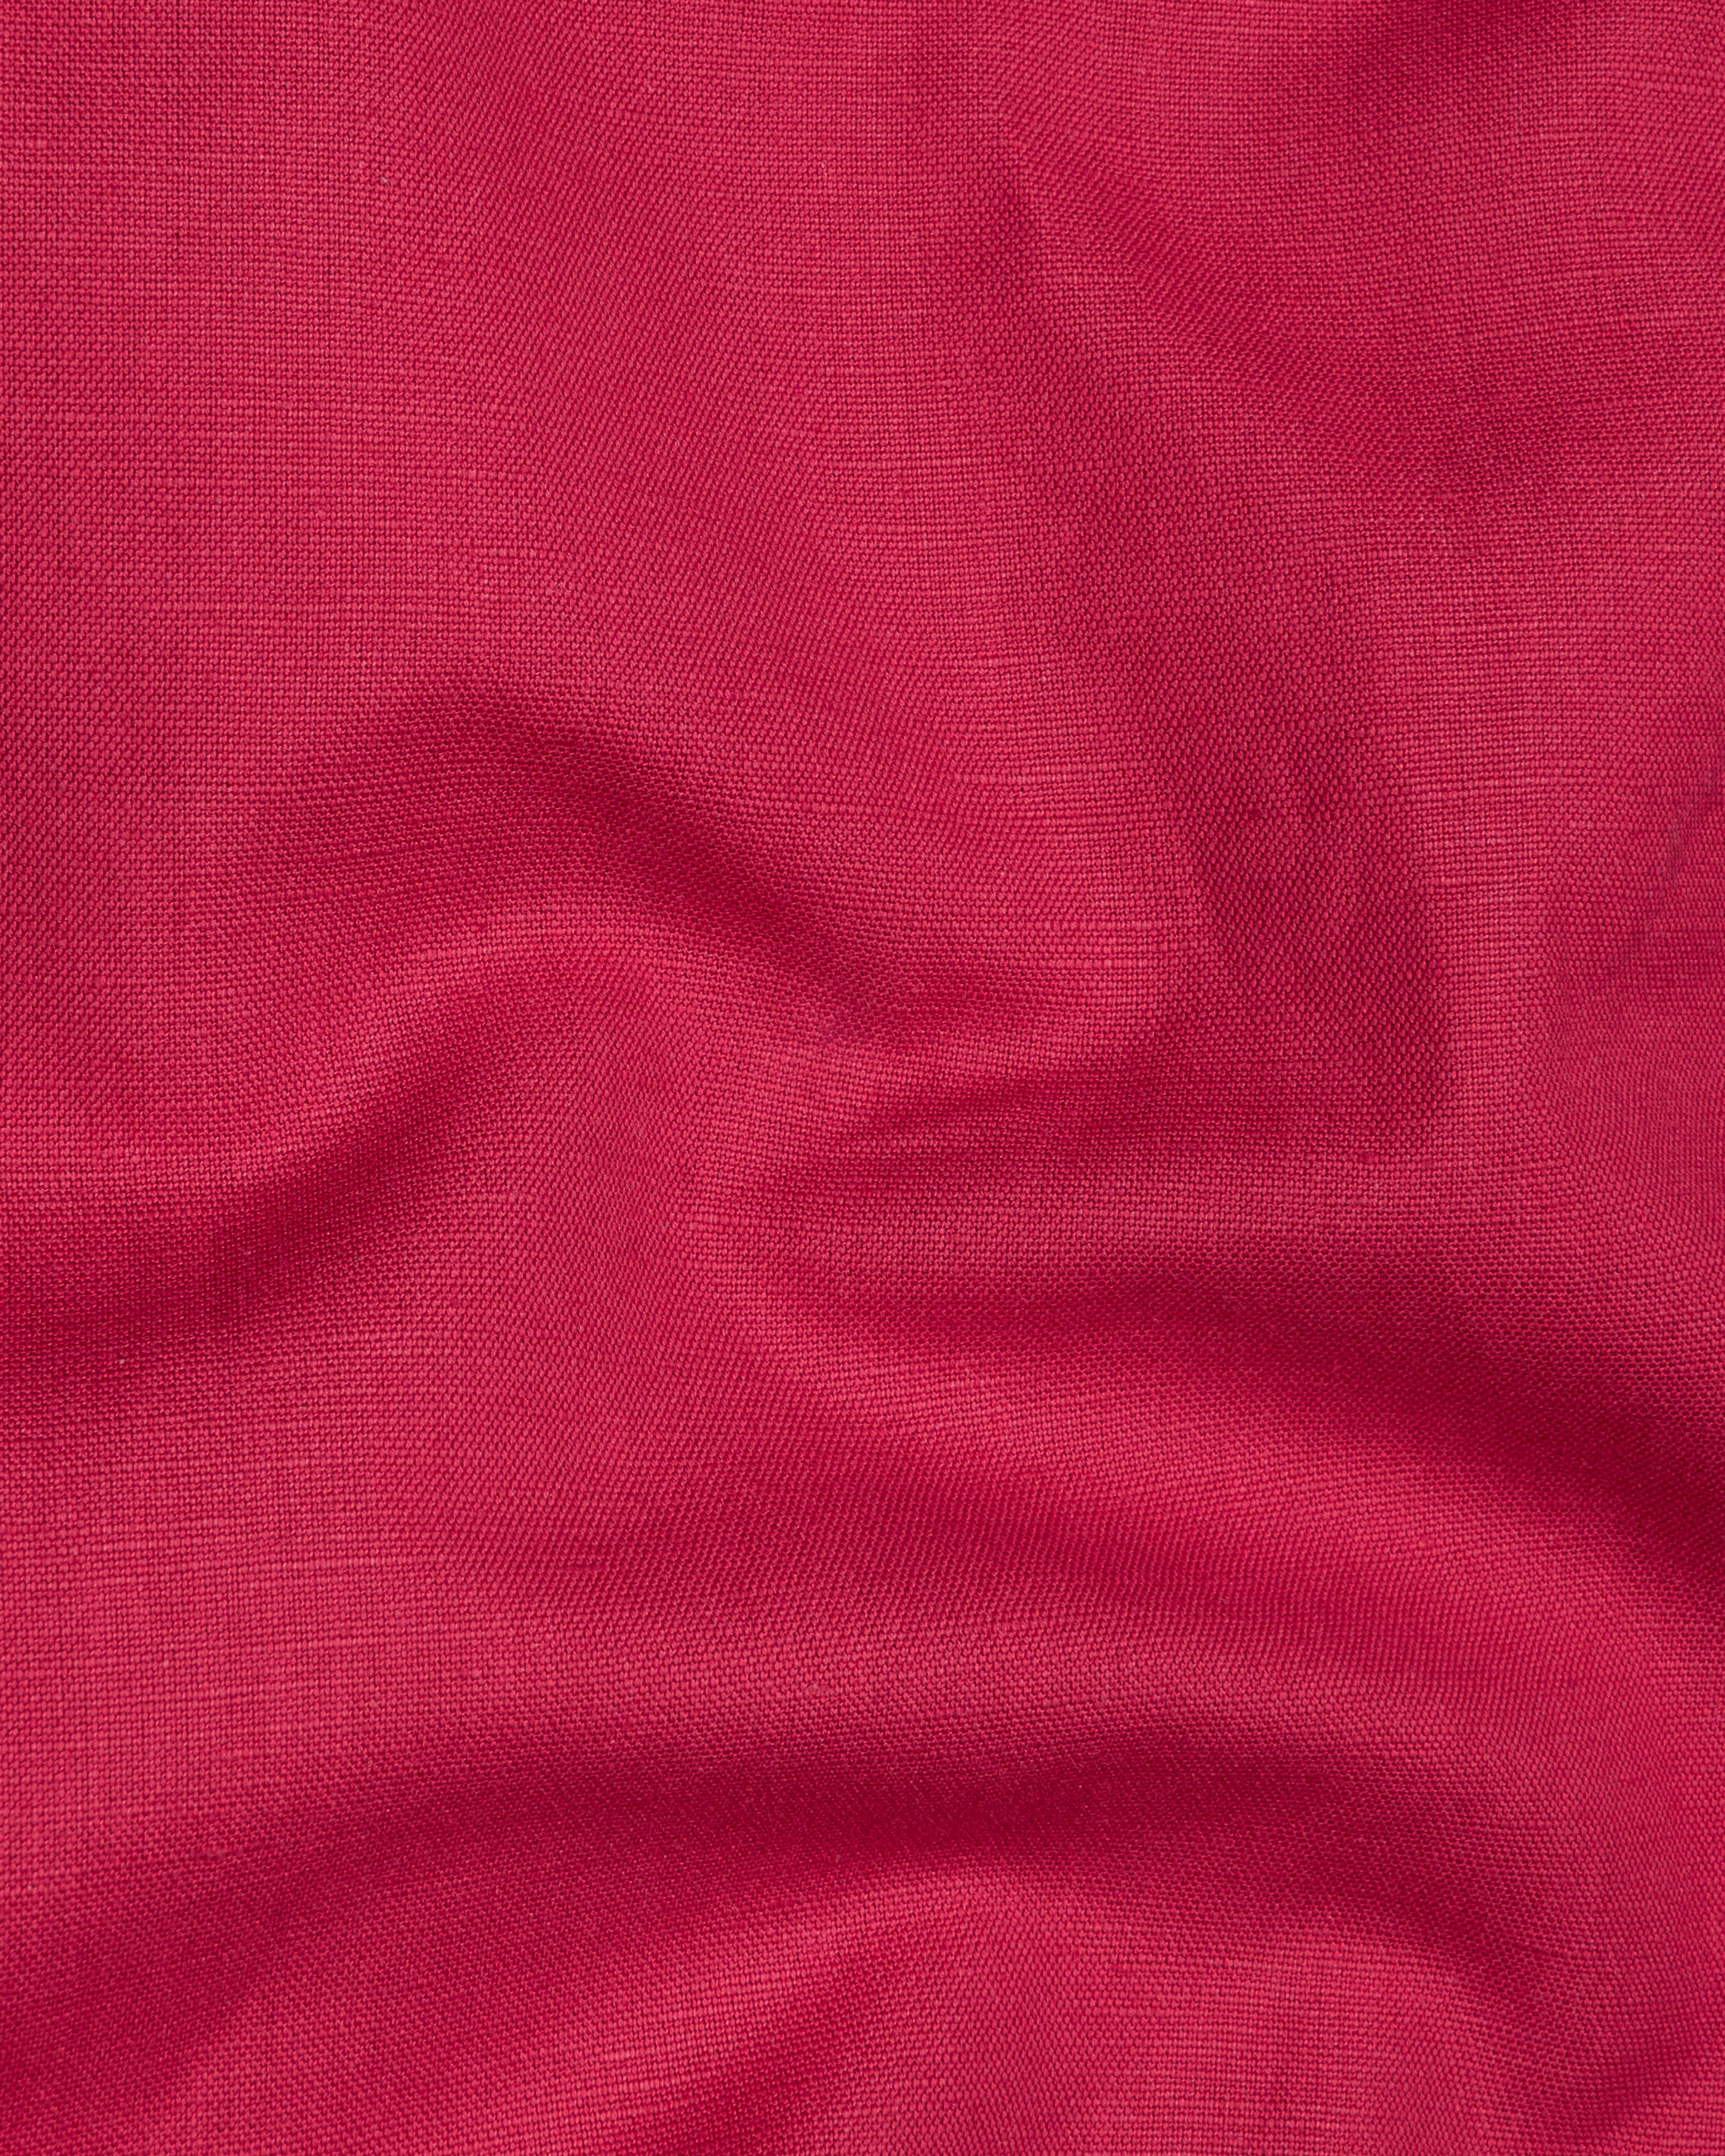 Cardinal Red Luxurious Linen Shirt 9589-38,9589-H-38,9589-39,9589-H-39,9589-40,9589-H-40,9589-42,9589-H-42,9589-44,9589-H-44,9589-46,9589-H-46,9589-48,9589-H-48,9589-50,9589-H-50,9589-52,9589-H-52